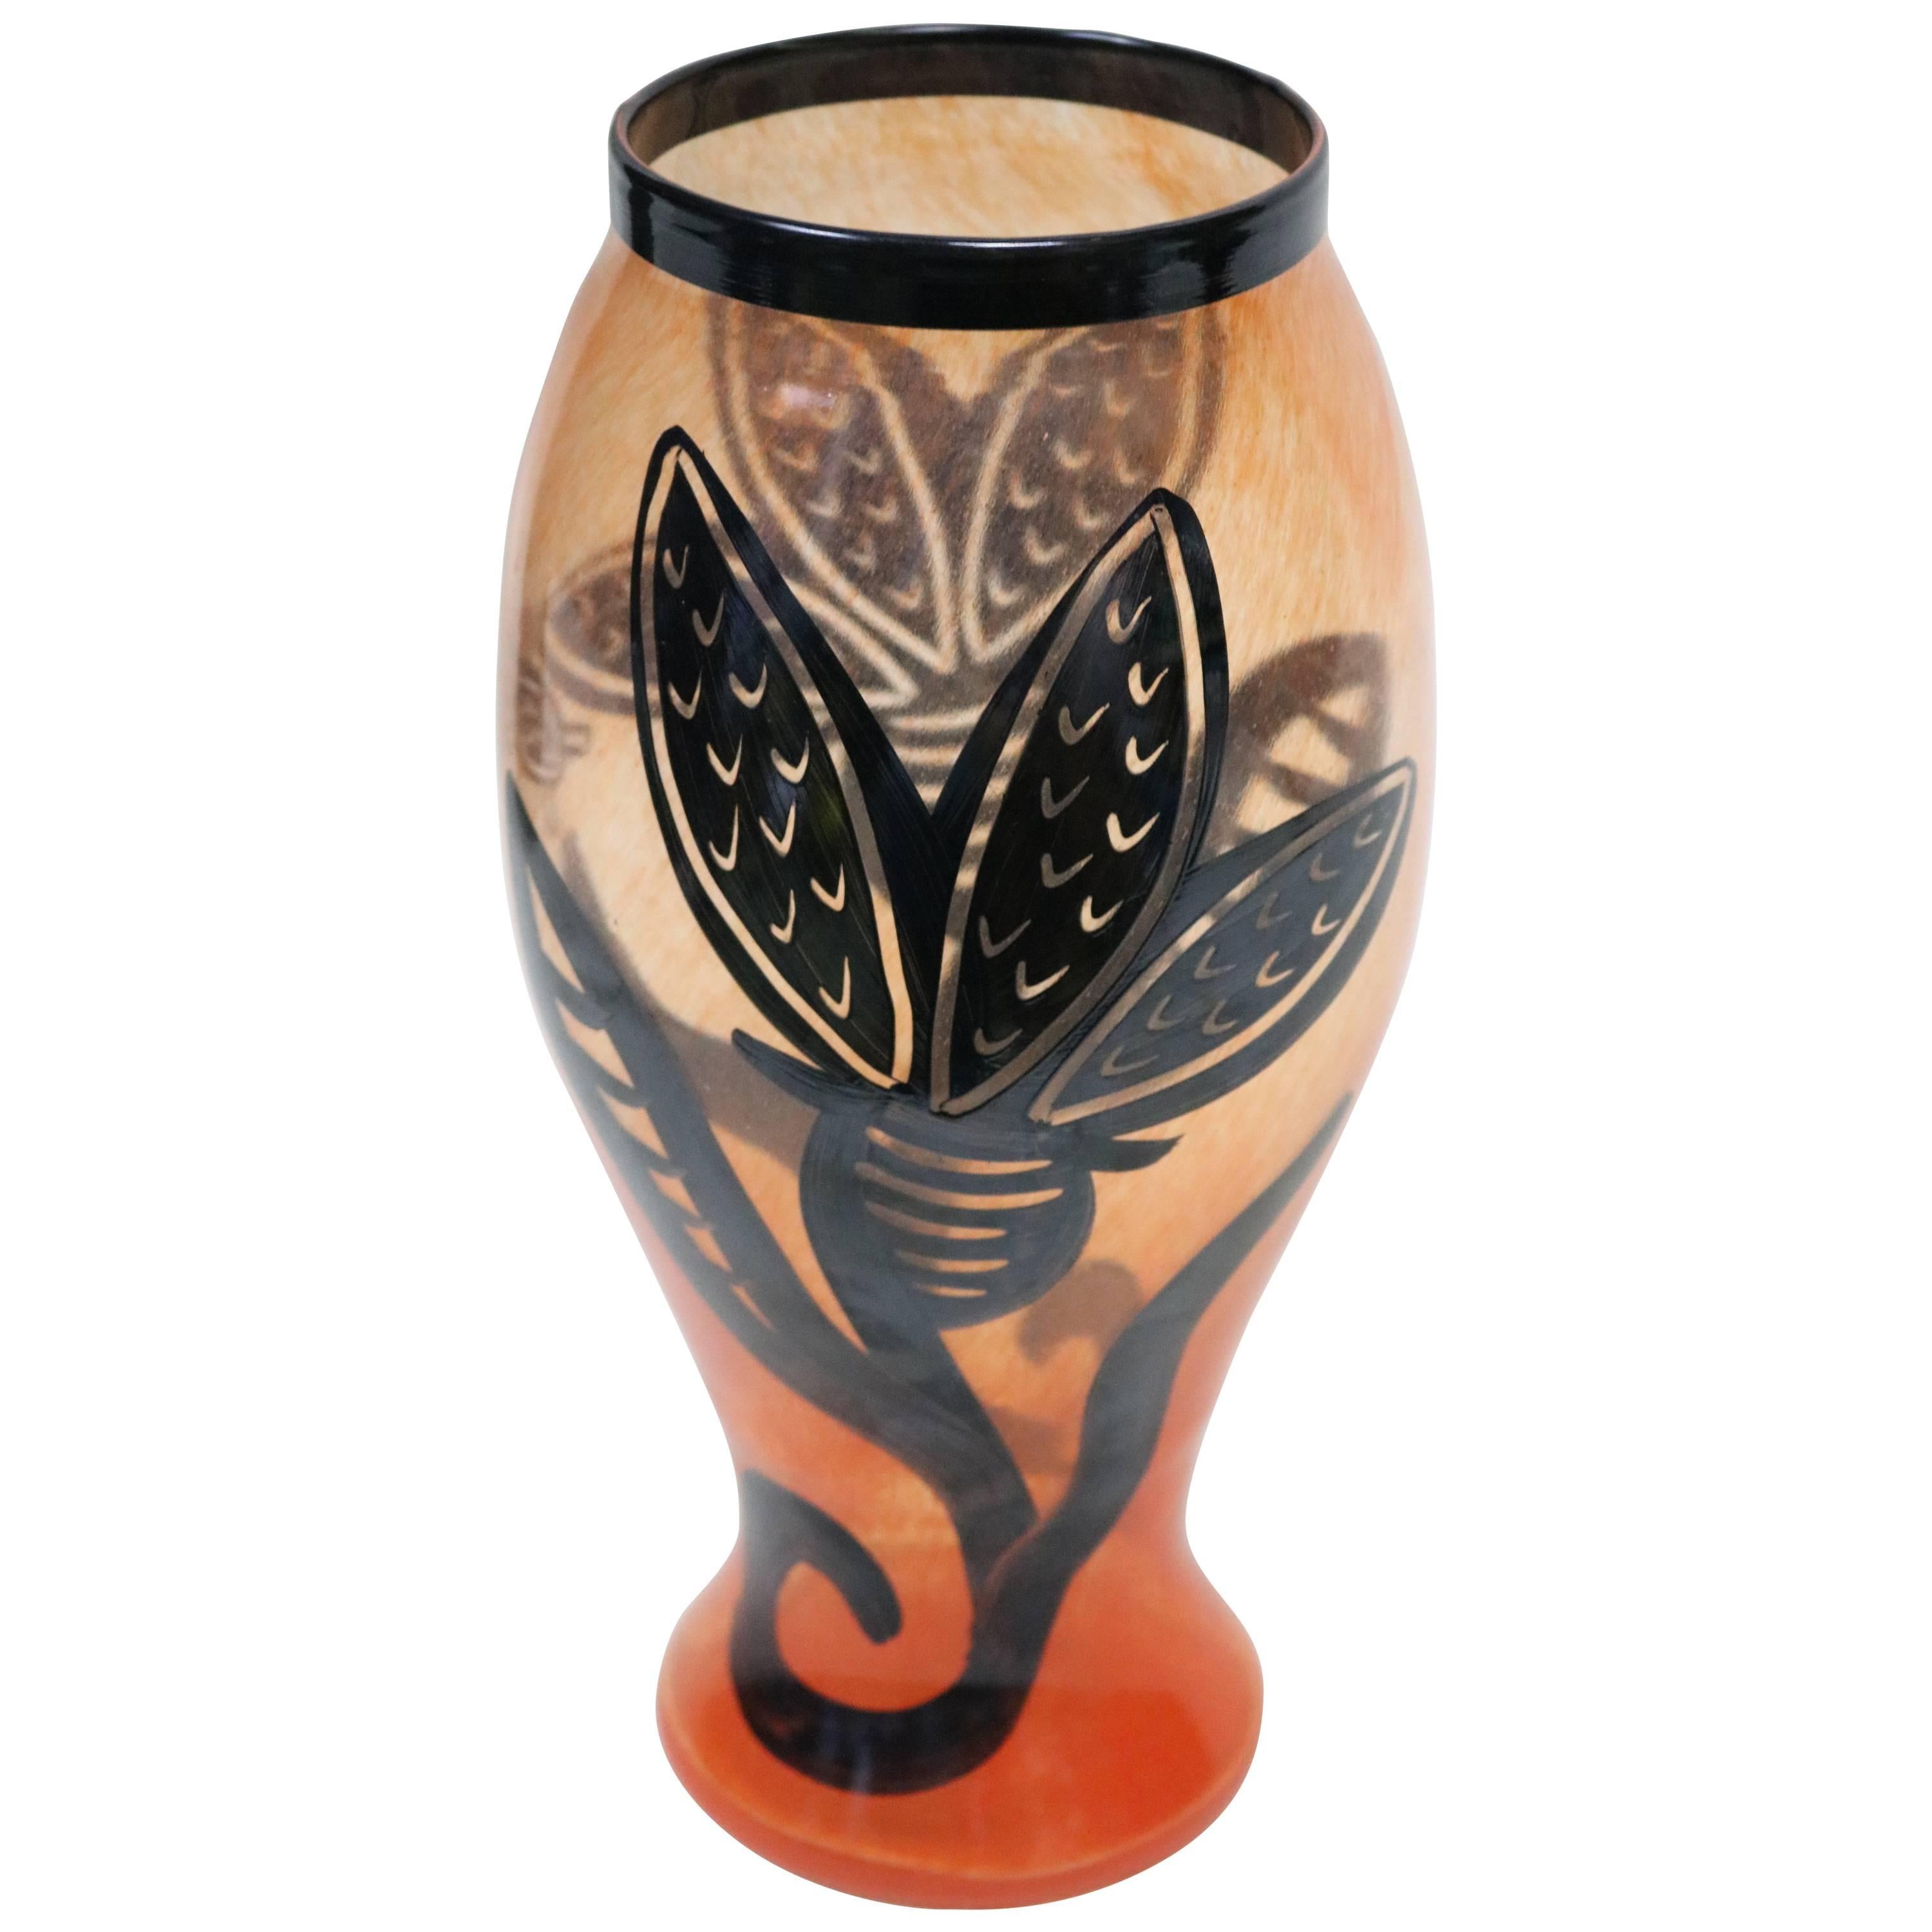 Kosta Boda Art Glass Vase Signed Artist Ulrica Hydman-Vallien For Sale